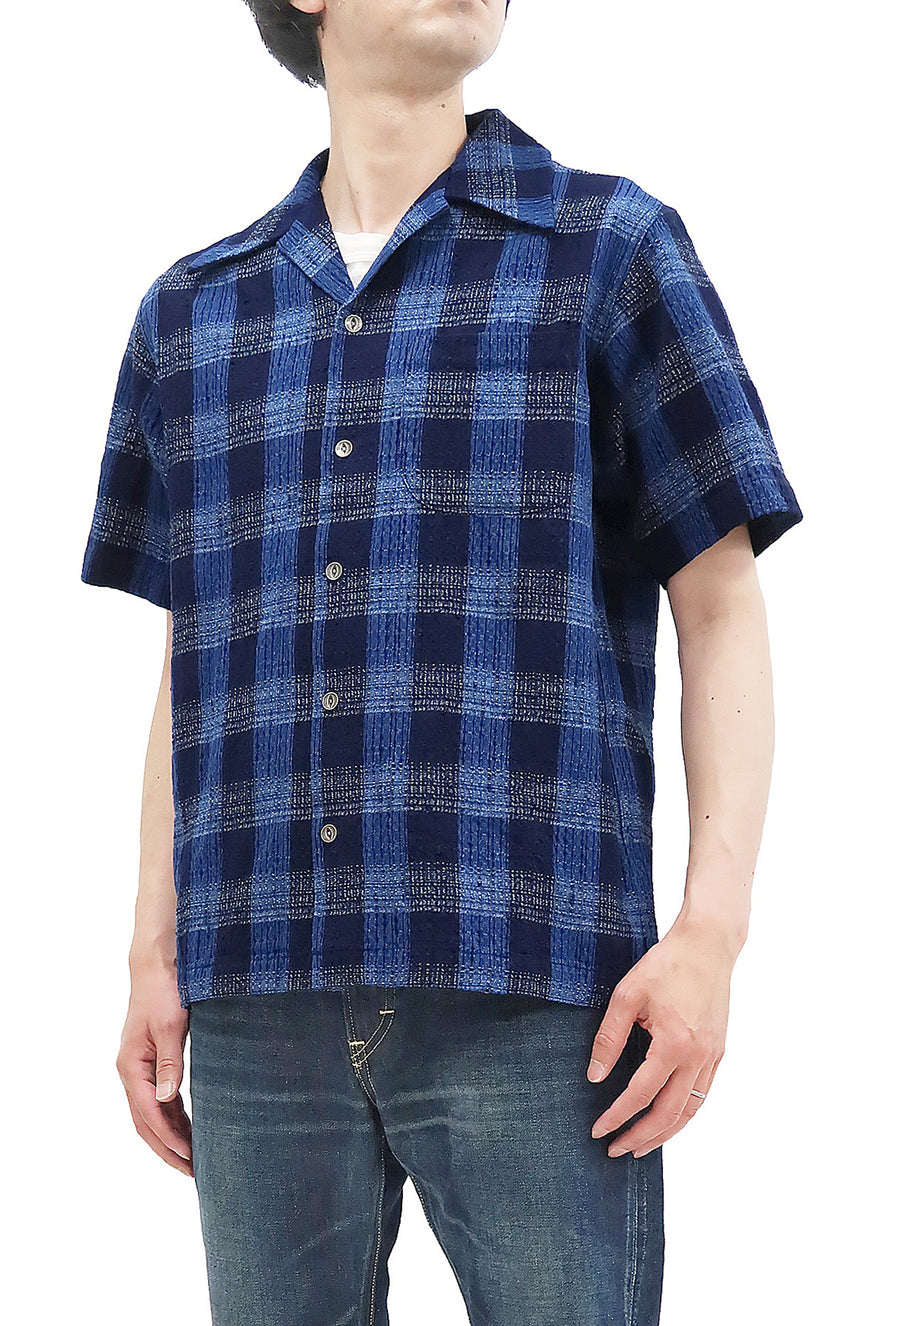 Samurai Jeans Shirt Men's Short Sleeve Japanese Kasuri Indigo Plaid Resort Collar Shirt SOS22-S02